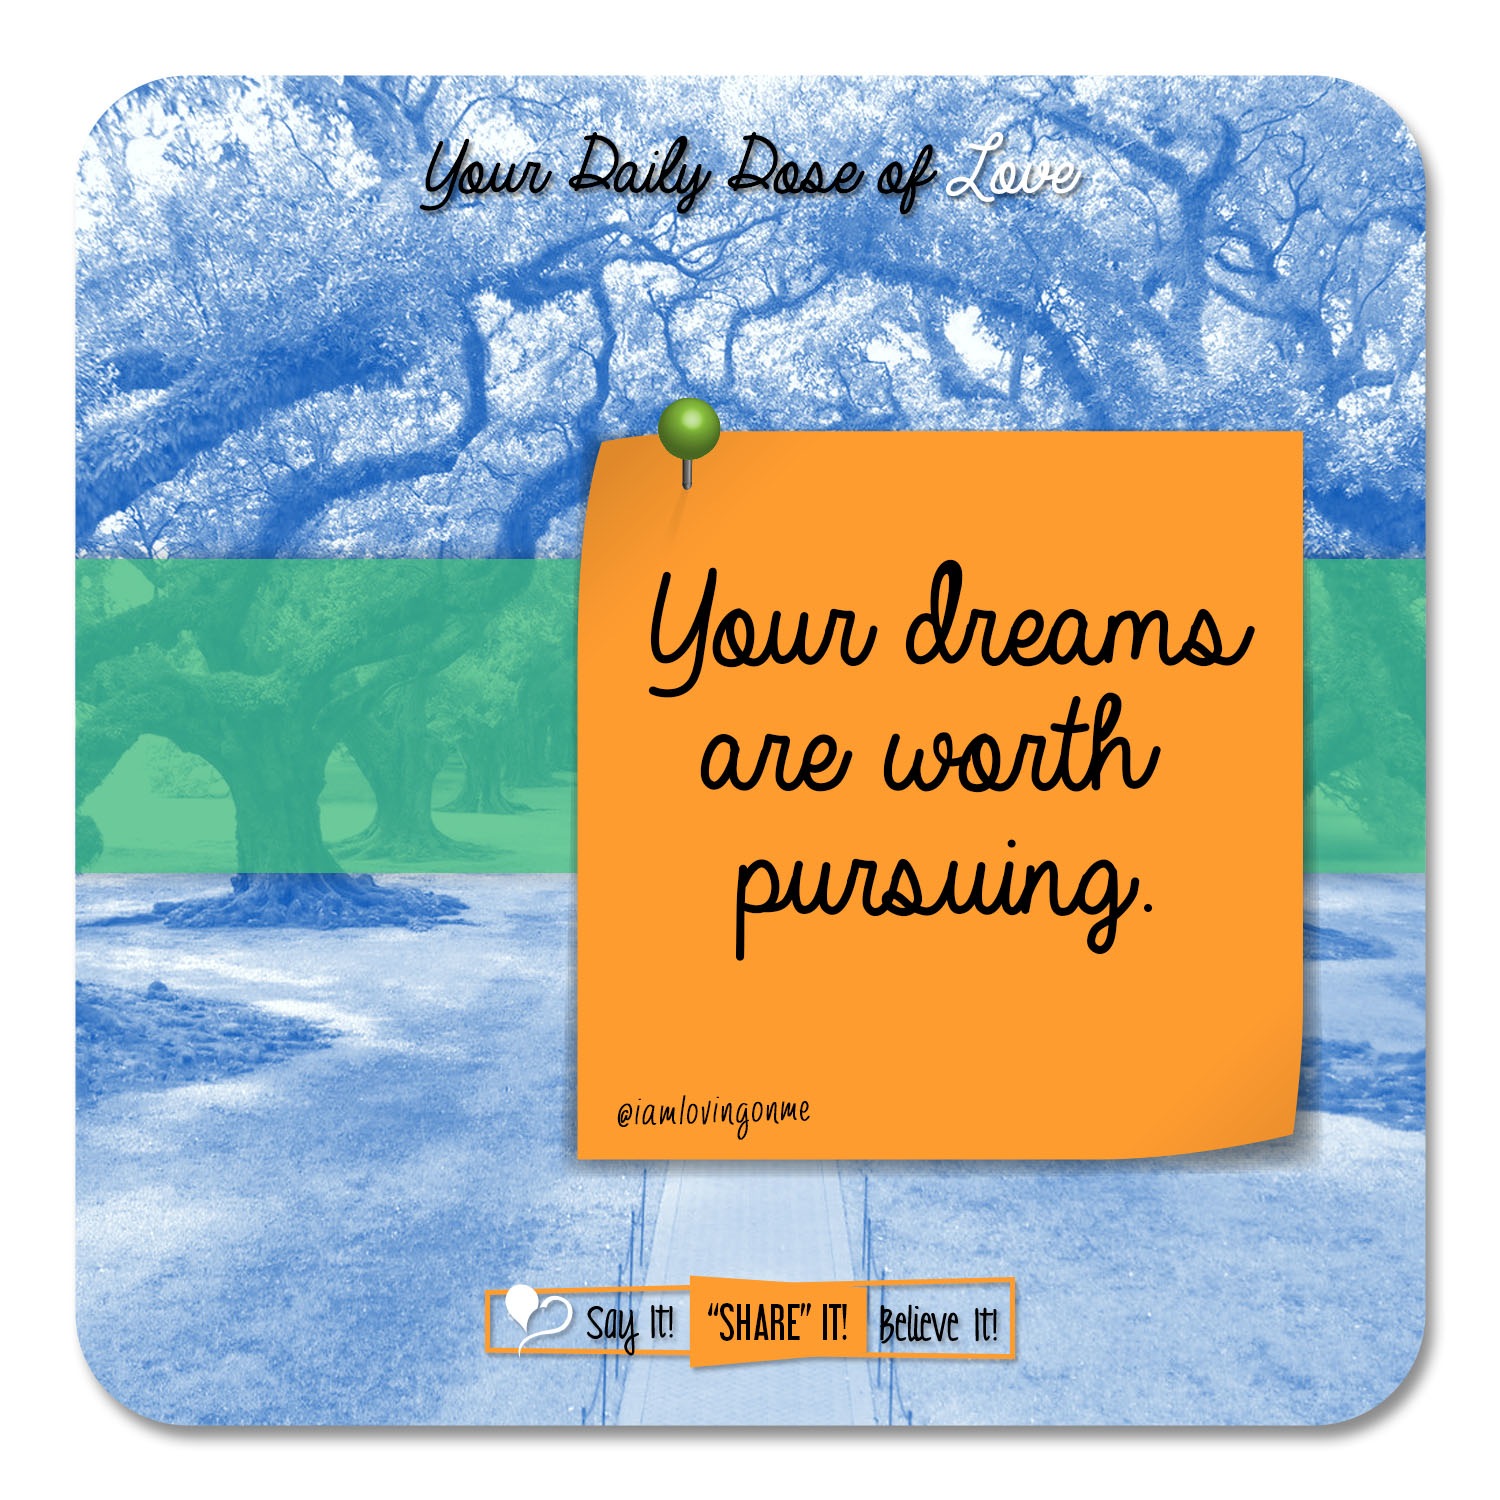 Pursue Your Dreams